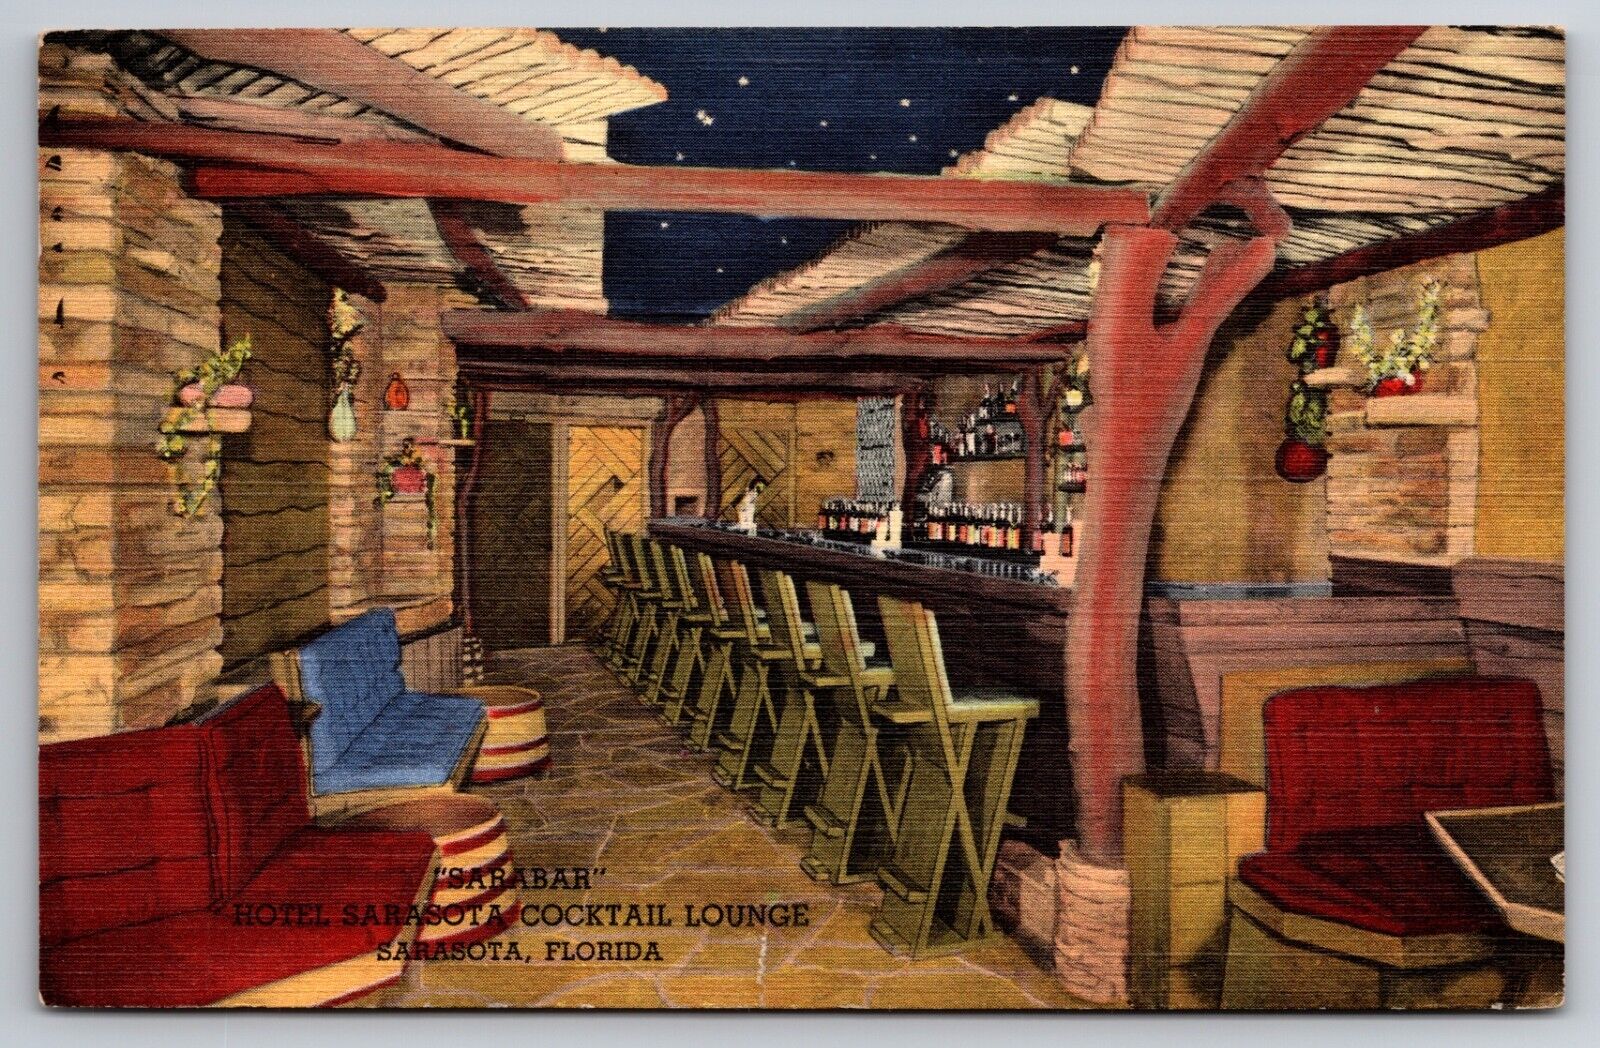 The Sarabar Cocktail Lounge Hotel Sarasota Florida Linen 1948 Postcard